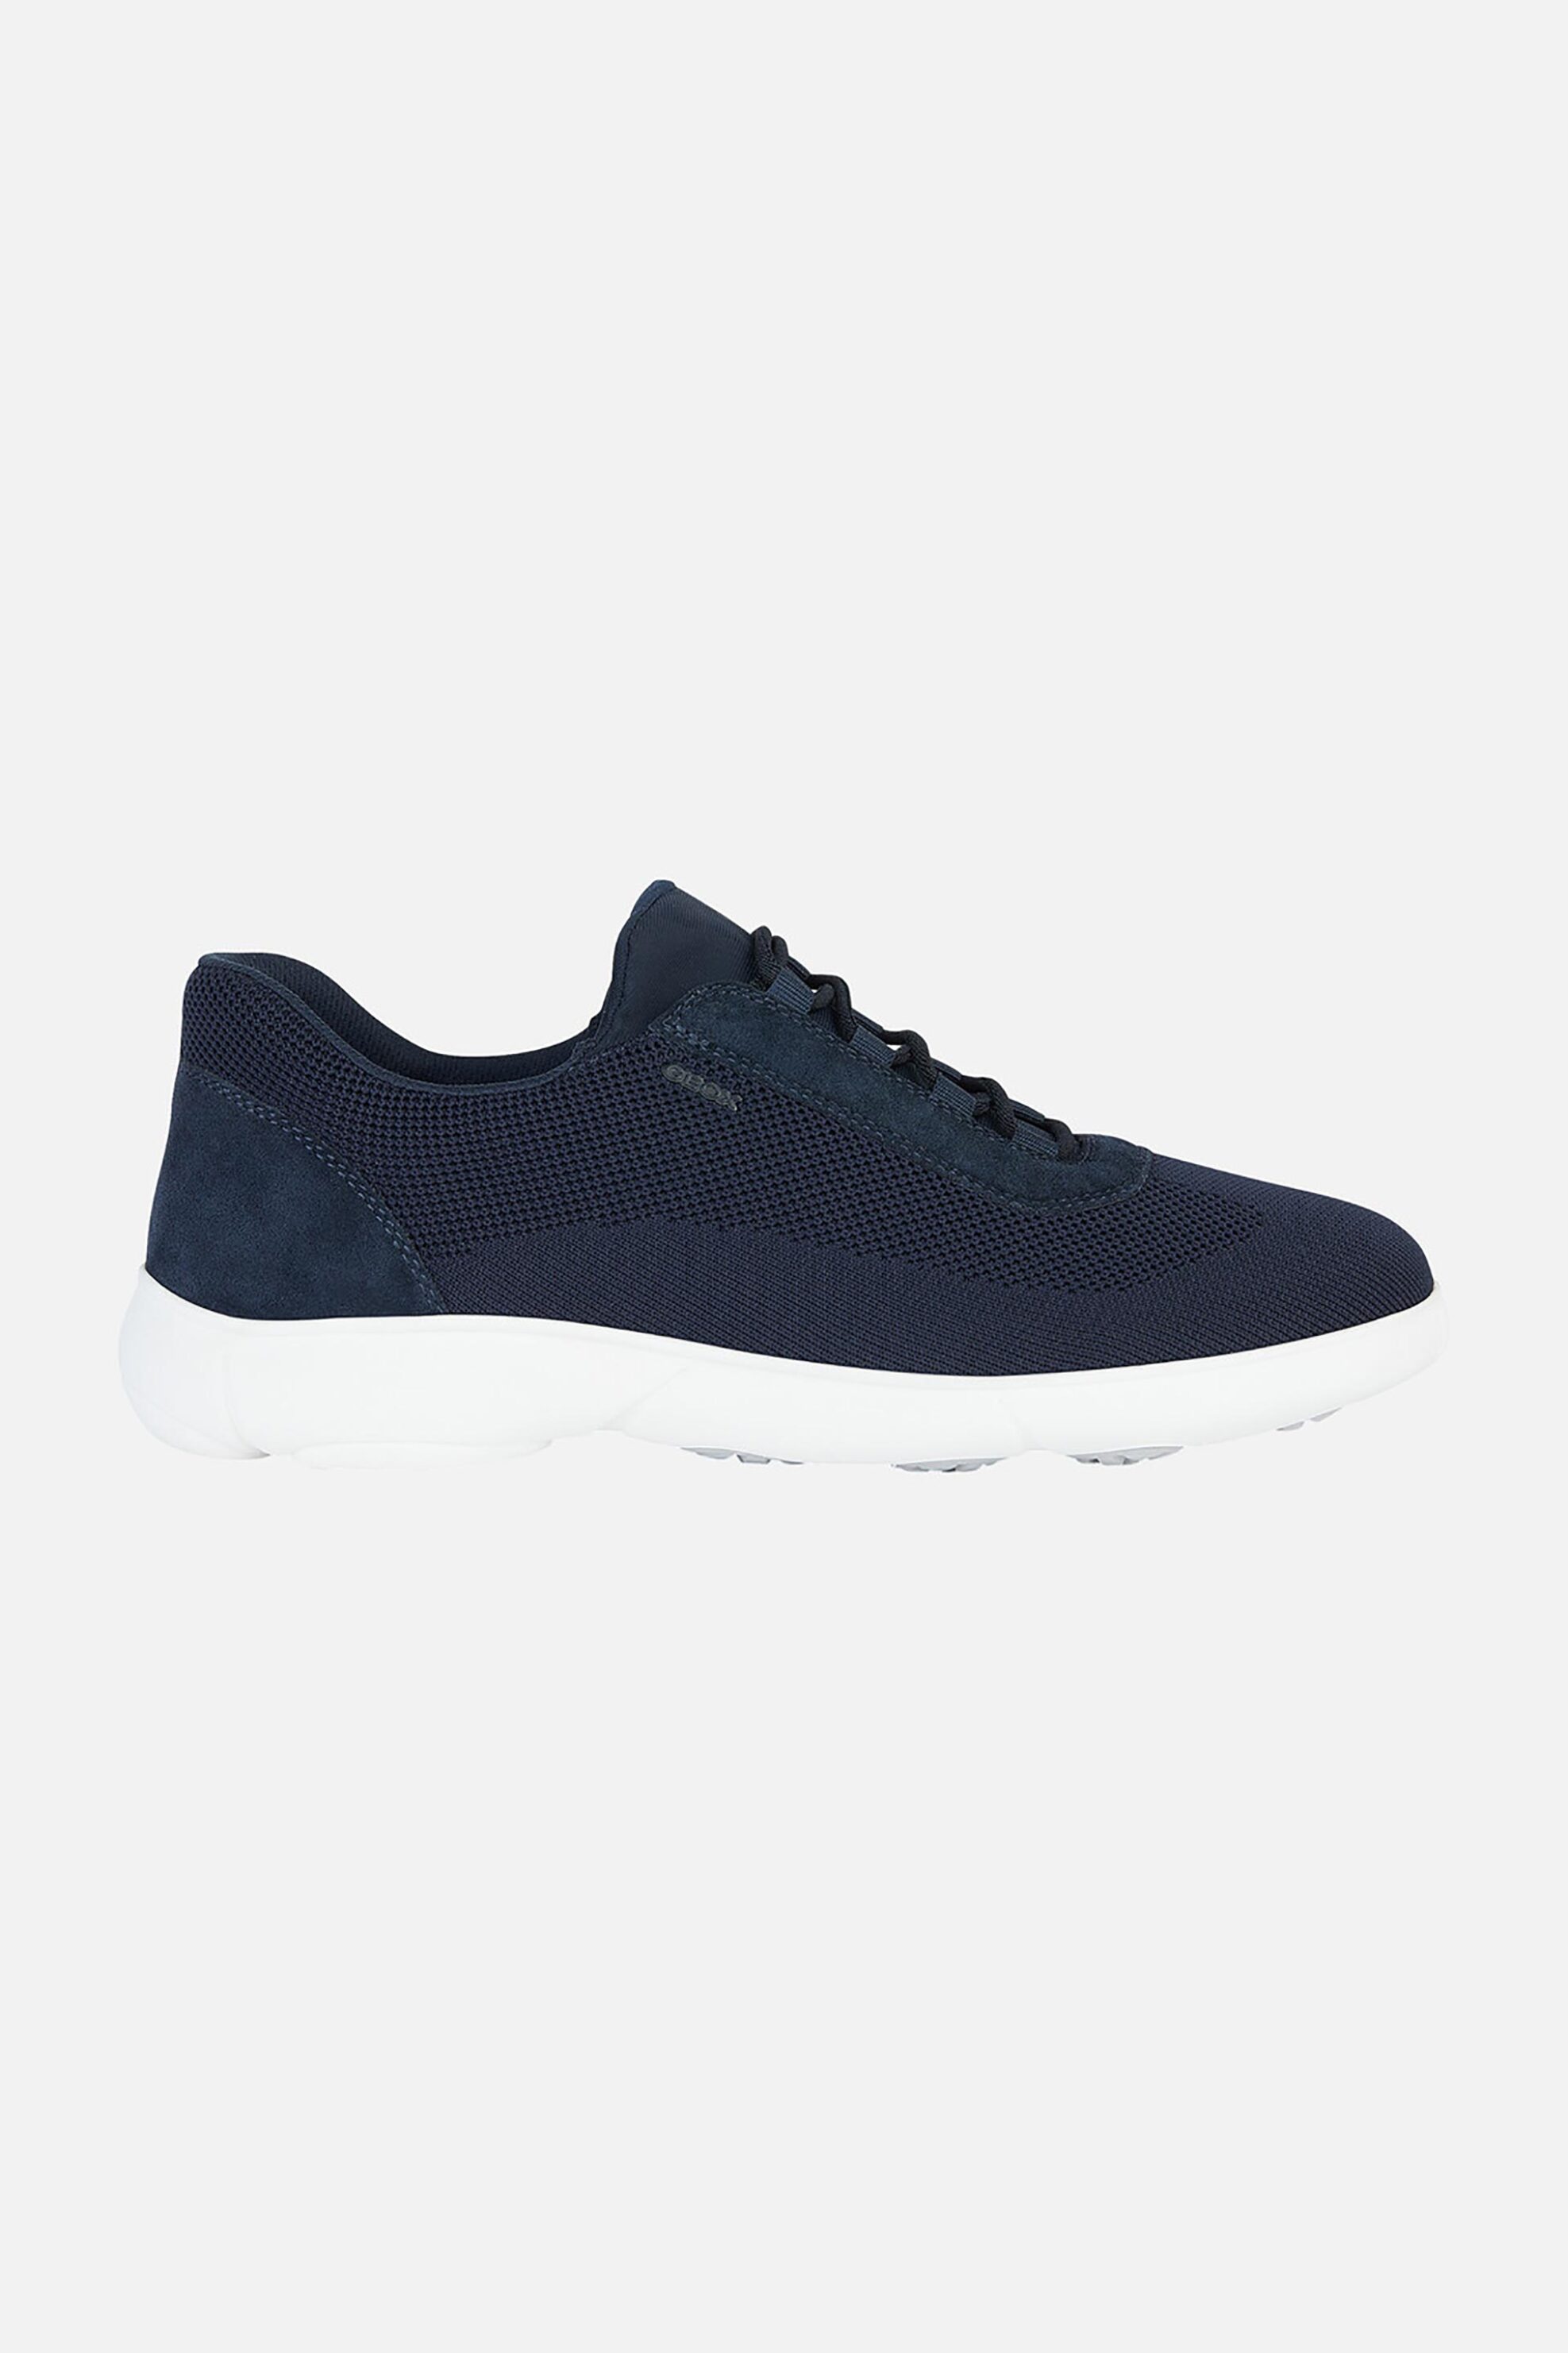 Ανδρική Μόδα > Ανδρικά Παπούτσια > Ανδρικά Sneakers Geox ανδρικά sneakers "Nebula 2.0" - U45G6A07T22C4002 Μπλε Σκούρο